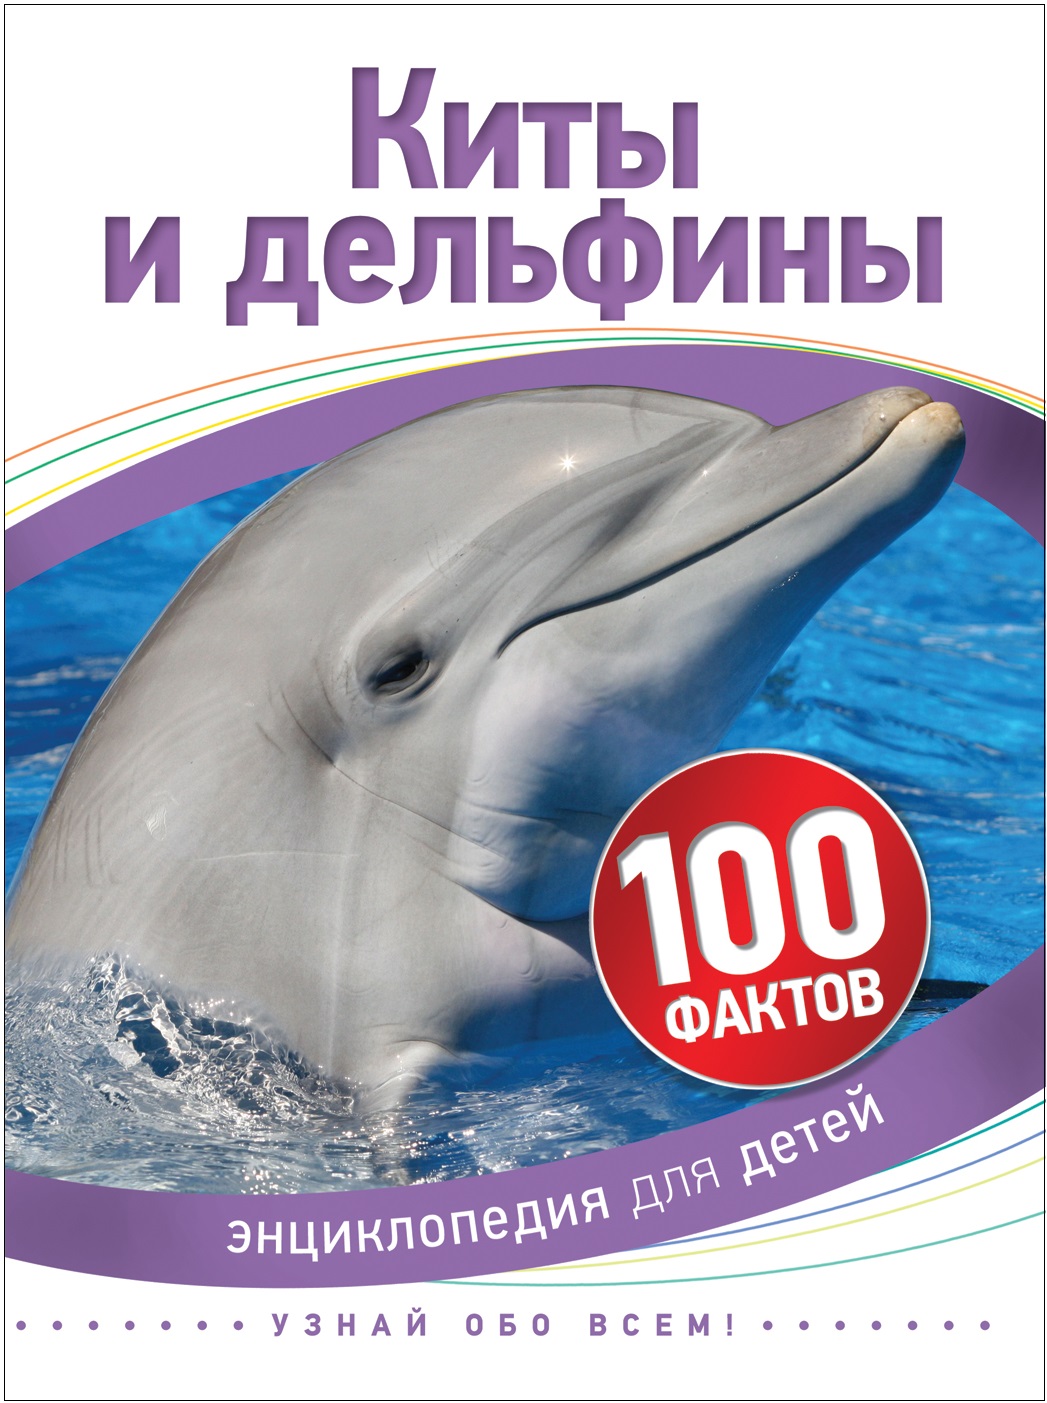 Книга 35069 "Киты и дельфины" 100 фактов Росмэн - Санкт-Петербург 